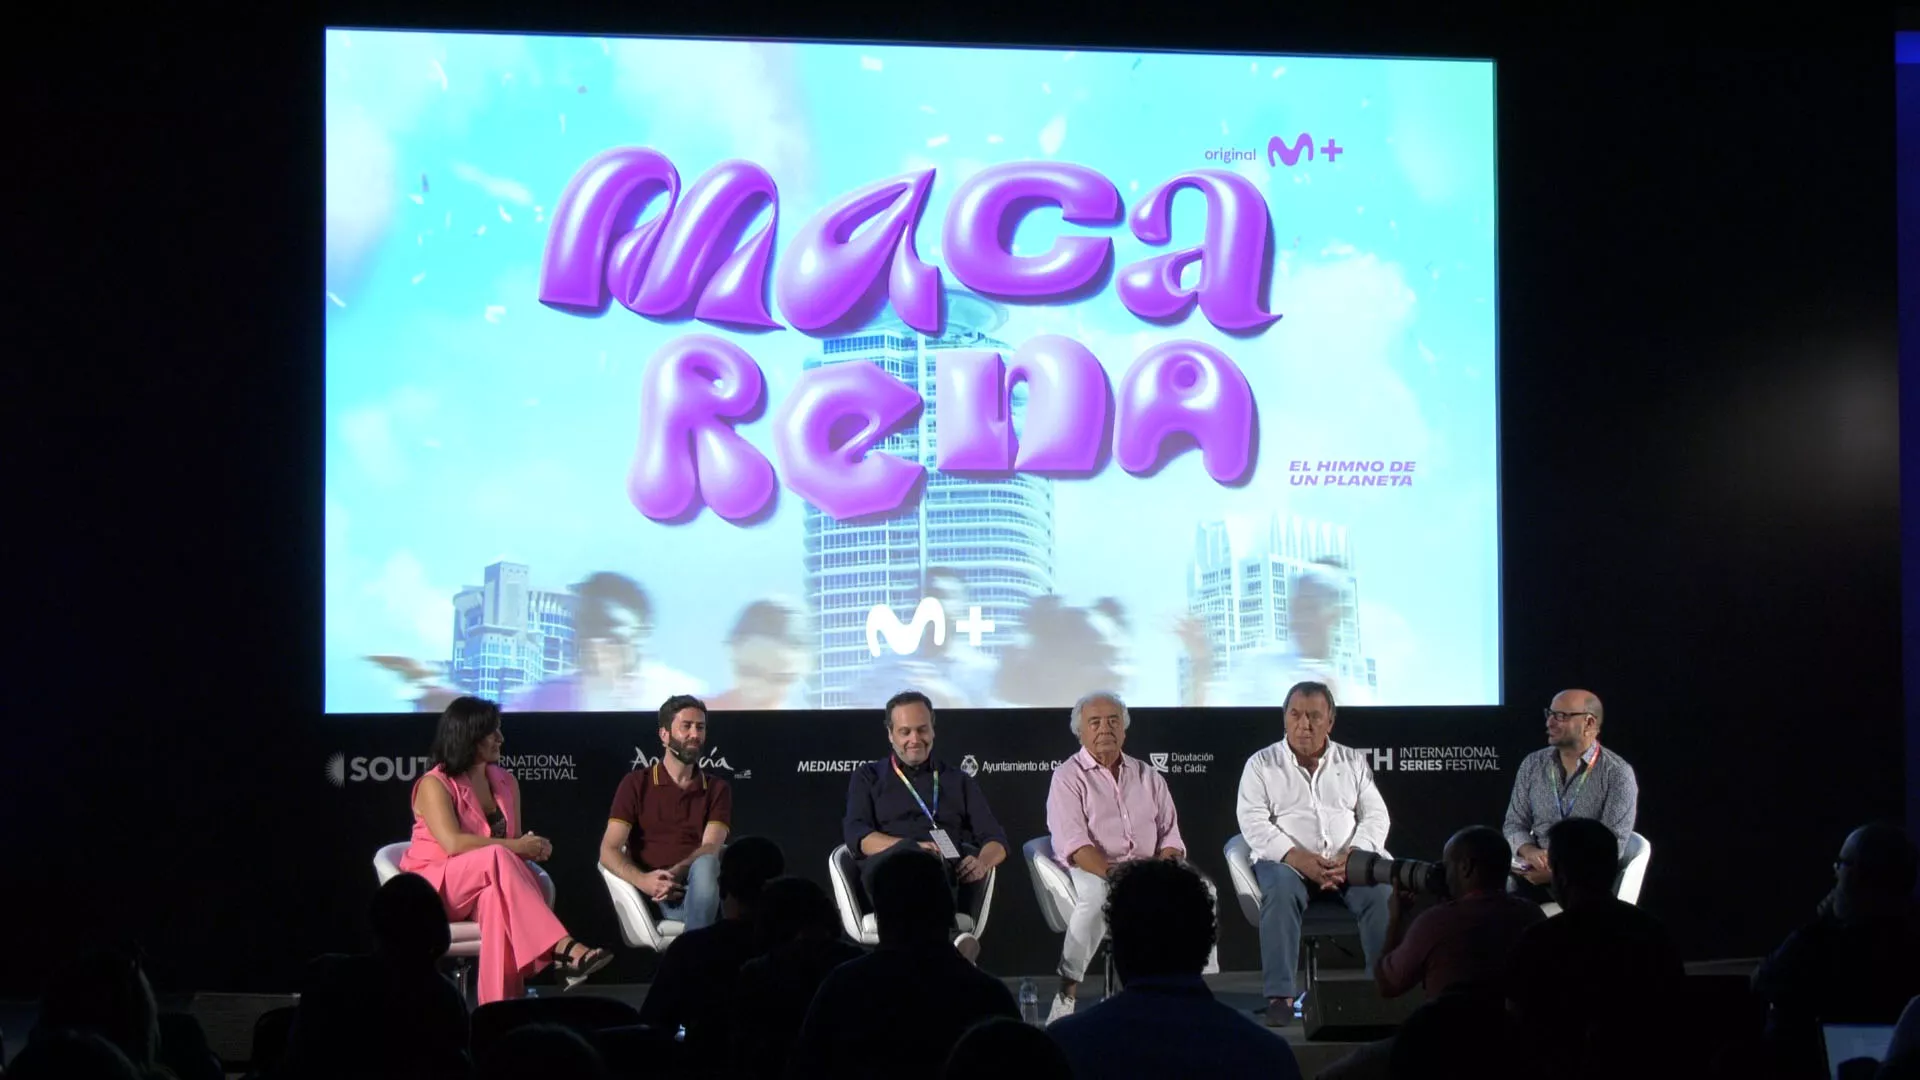 Los del Río, junto al director y productores de la serie, durante la presentación del documental "Macarena"